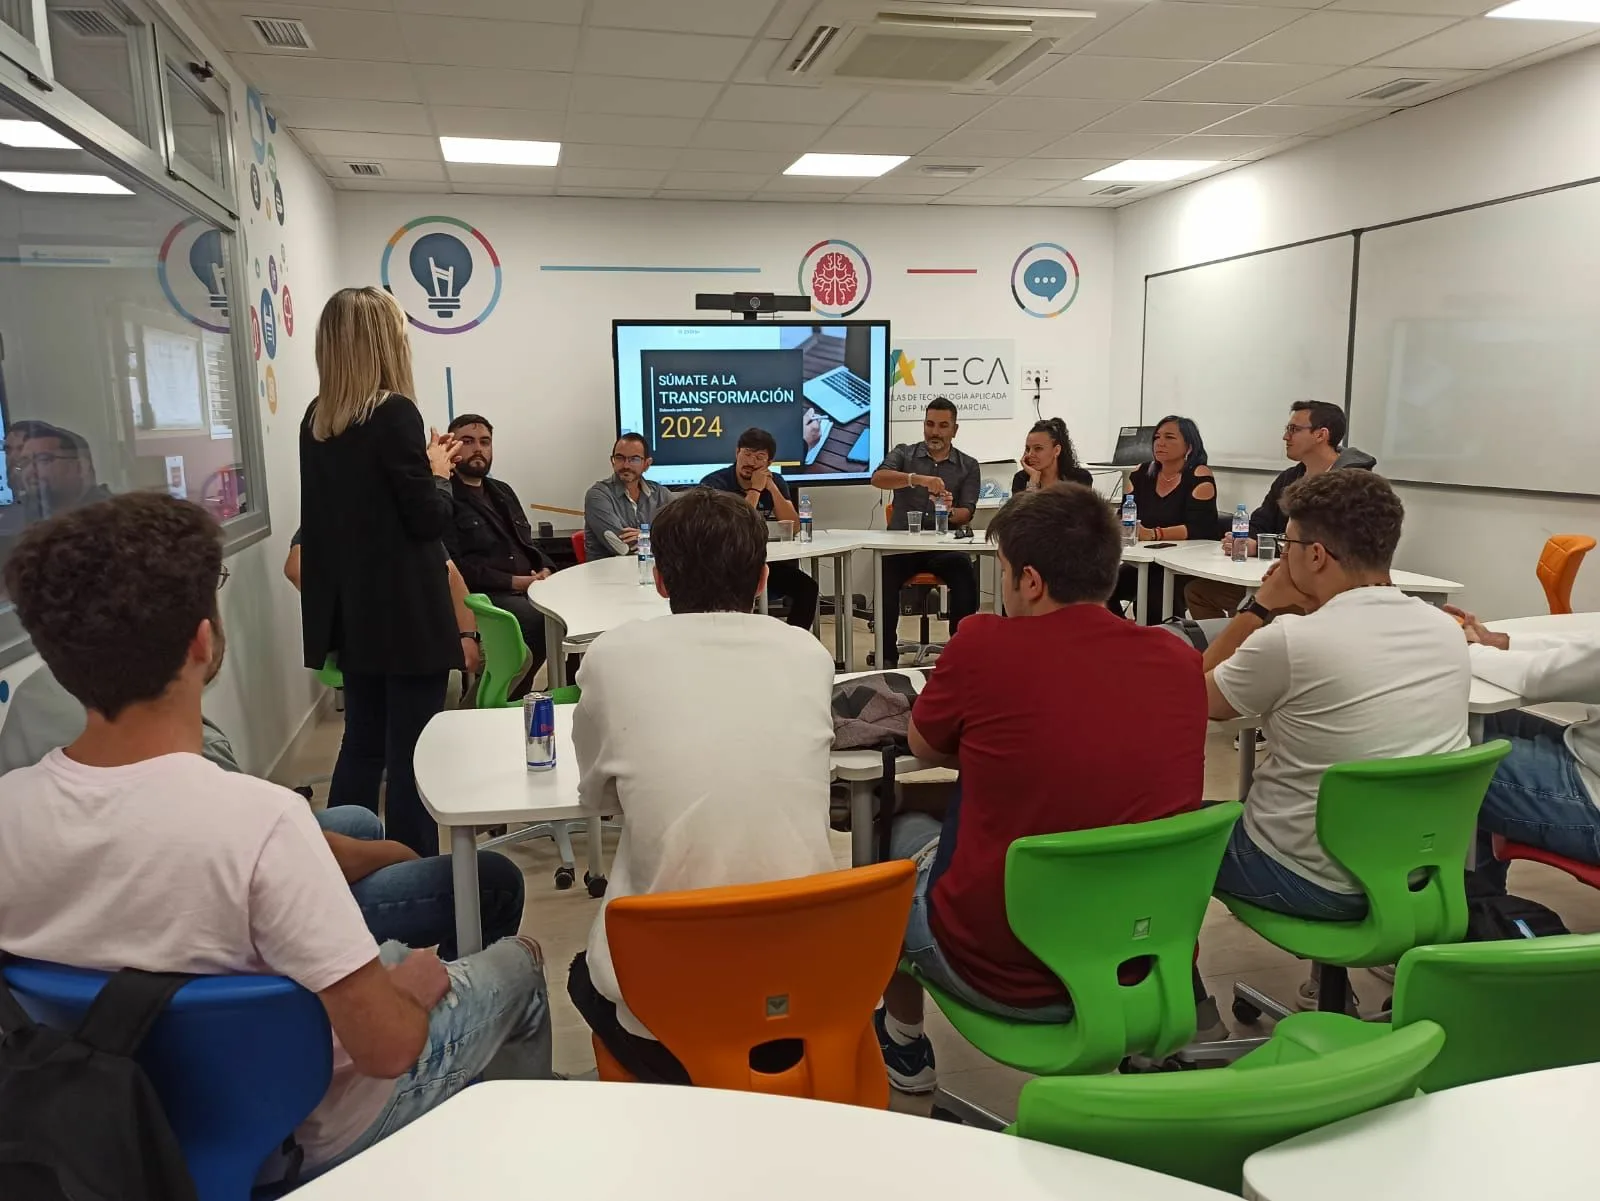 Empresas tecnológicas presentan sus desafíos y aprendizajes a estudiantes en Fuerteventura